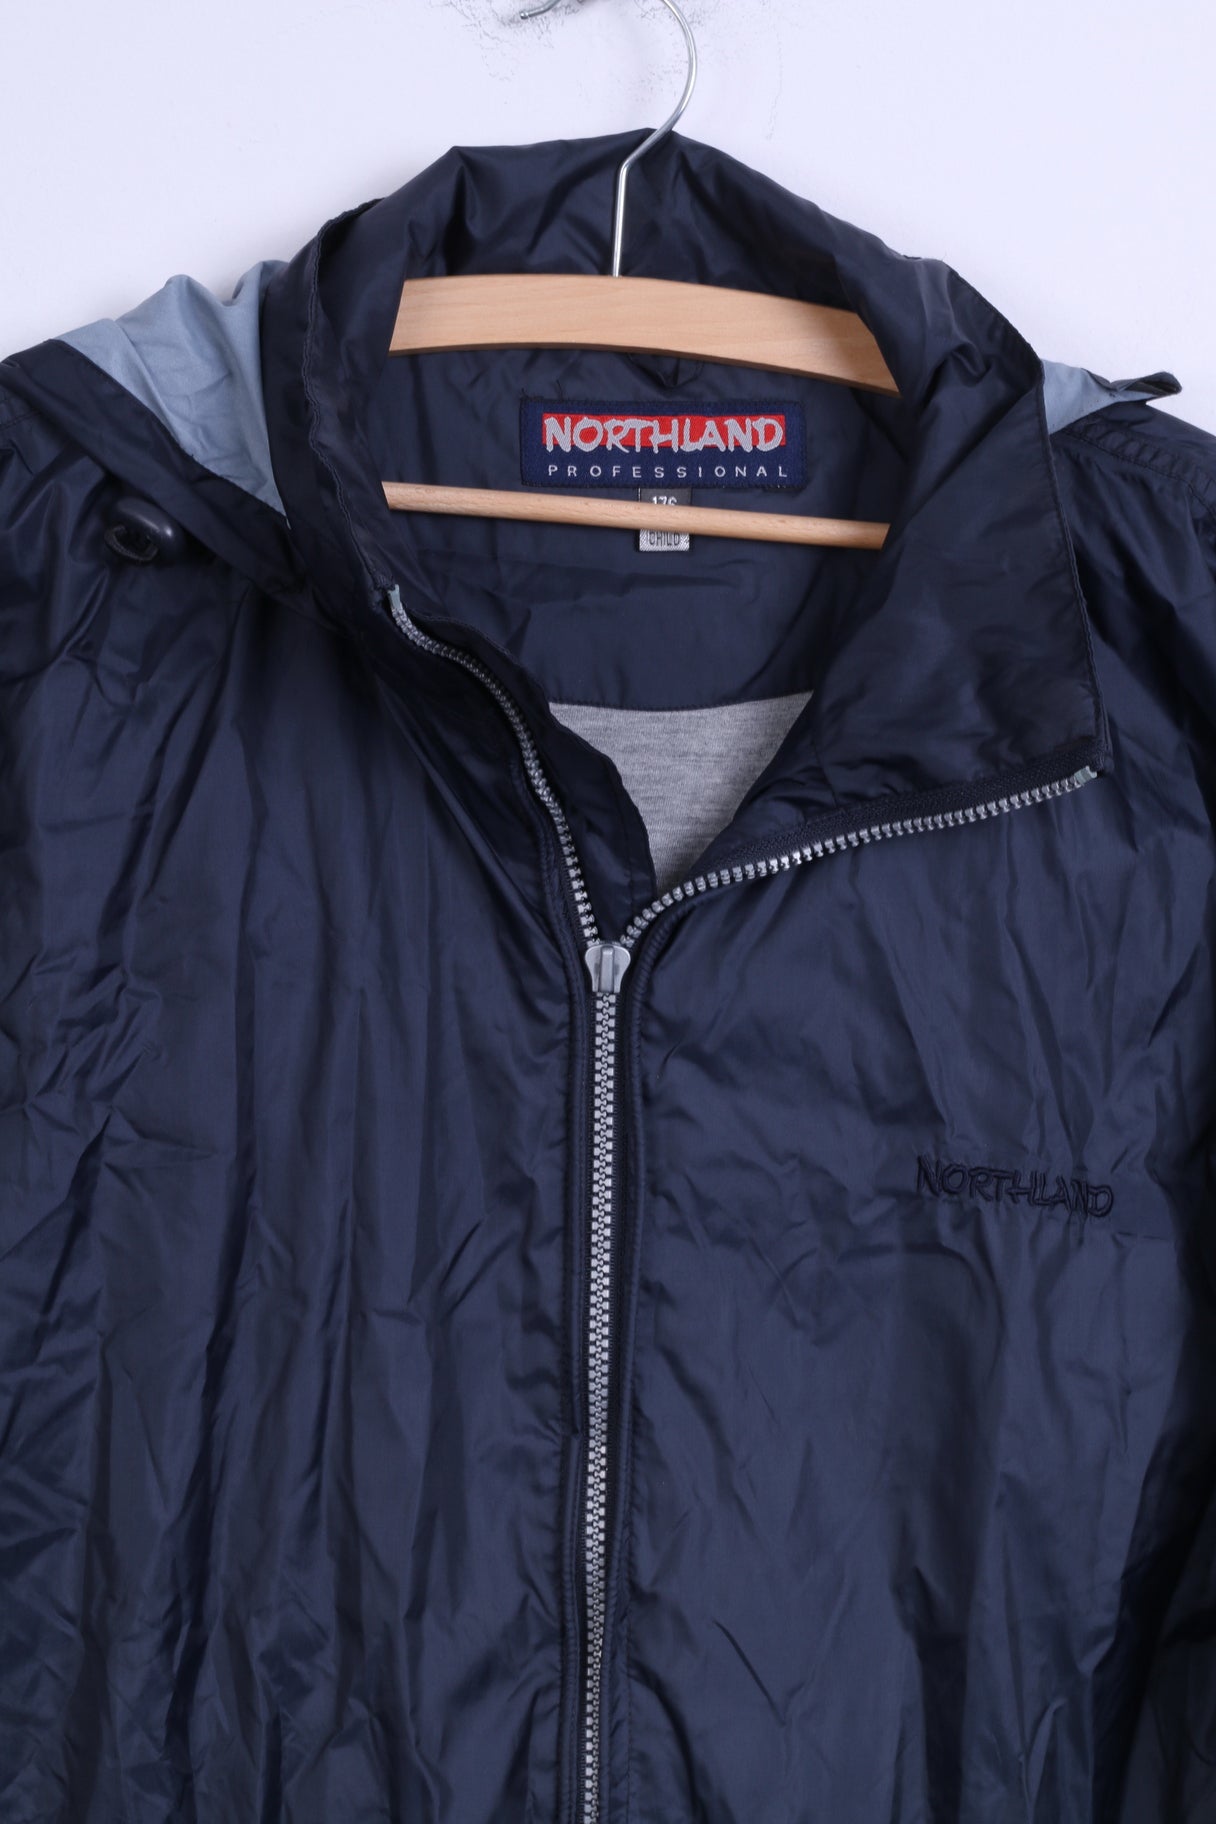 Northland Mens 176 M Jacket Navy Nylon Rainproof Hooded Zip Up Top